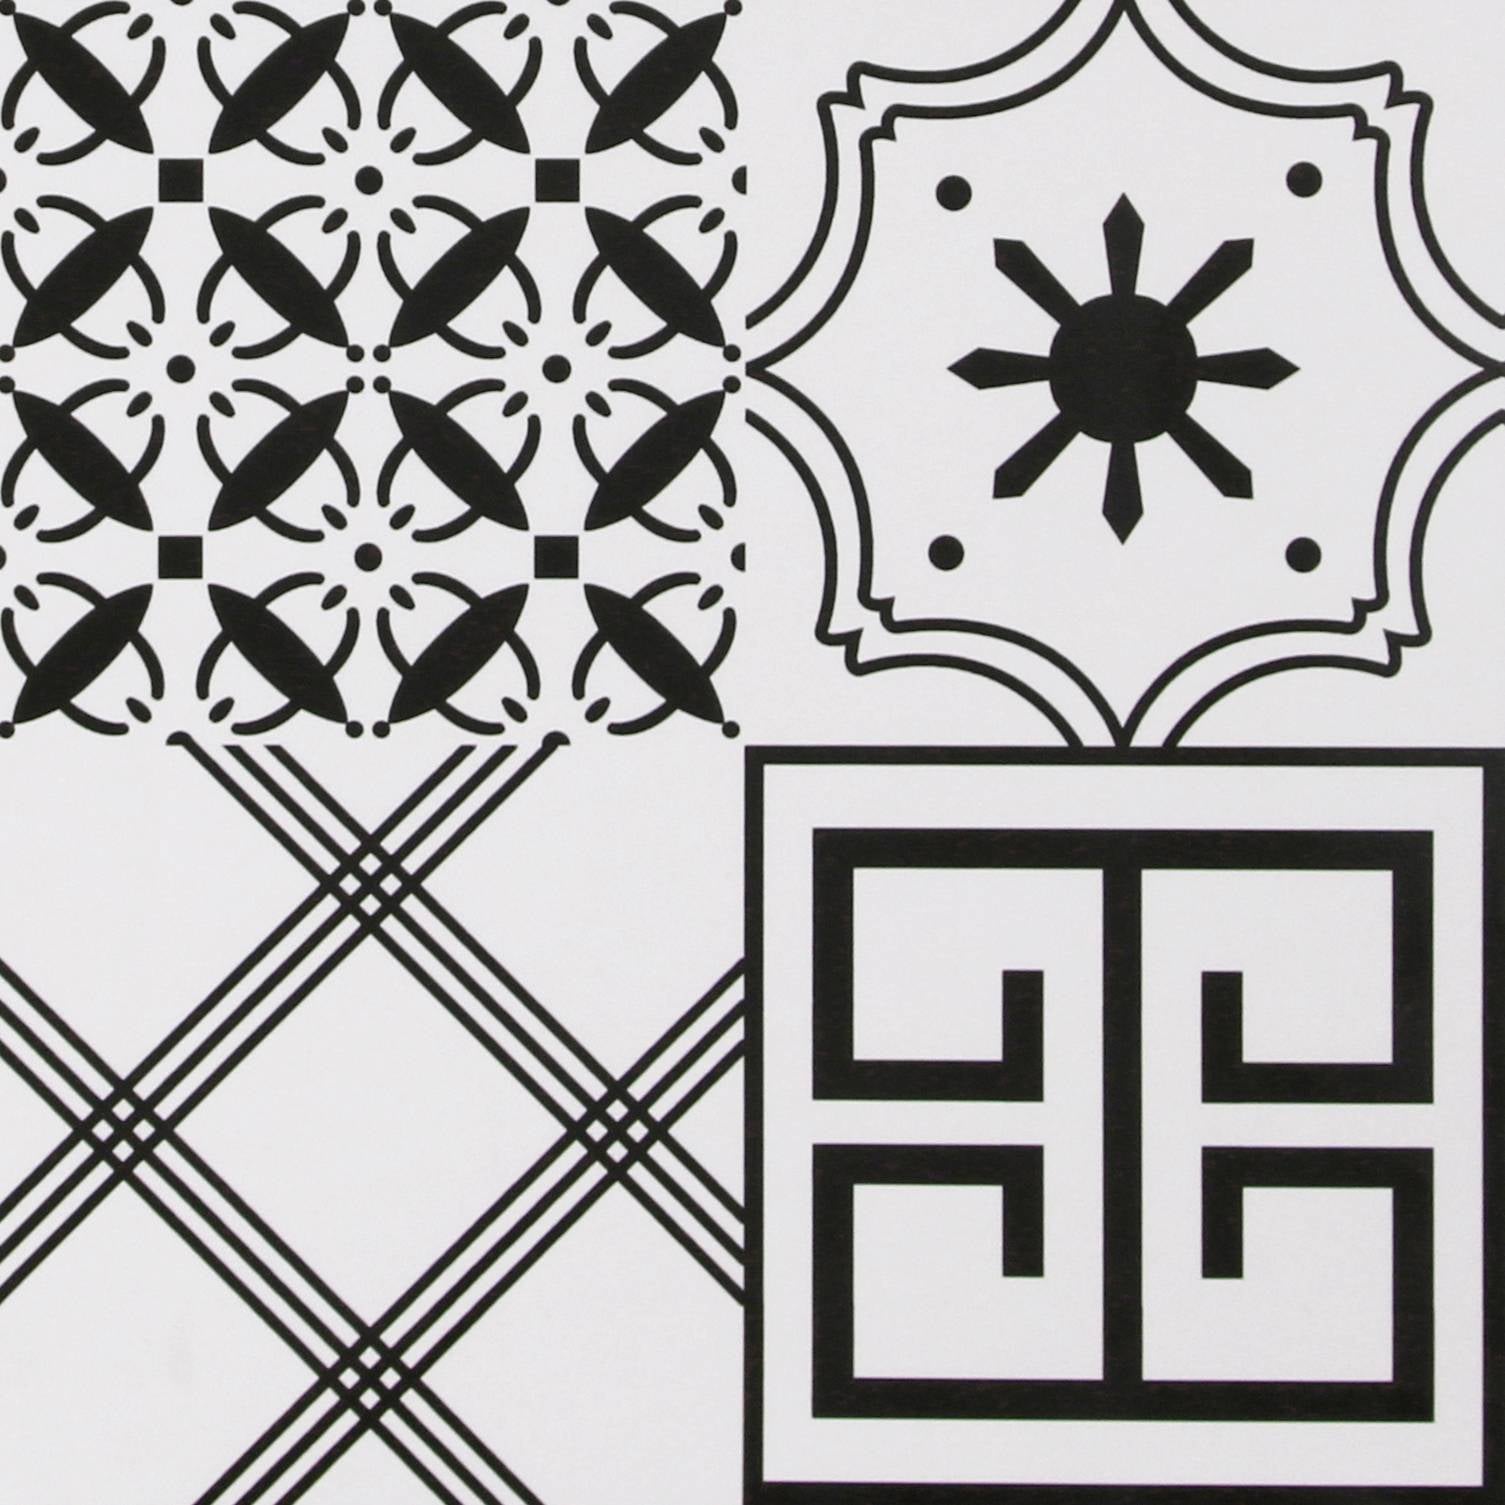 中國佛山瓷磚 China Foshan Tiles Encaustic Tiles 啞光地磚 牆磚F068花磚 裝飾磚 混裝發貨 隨機圖案 30×30cm